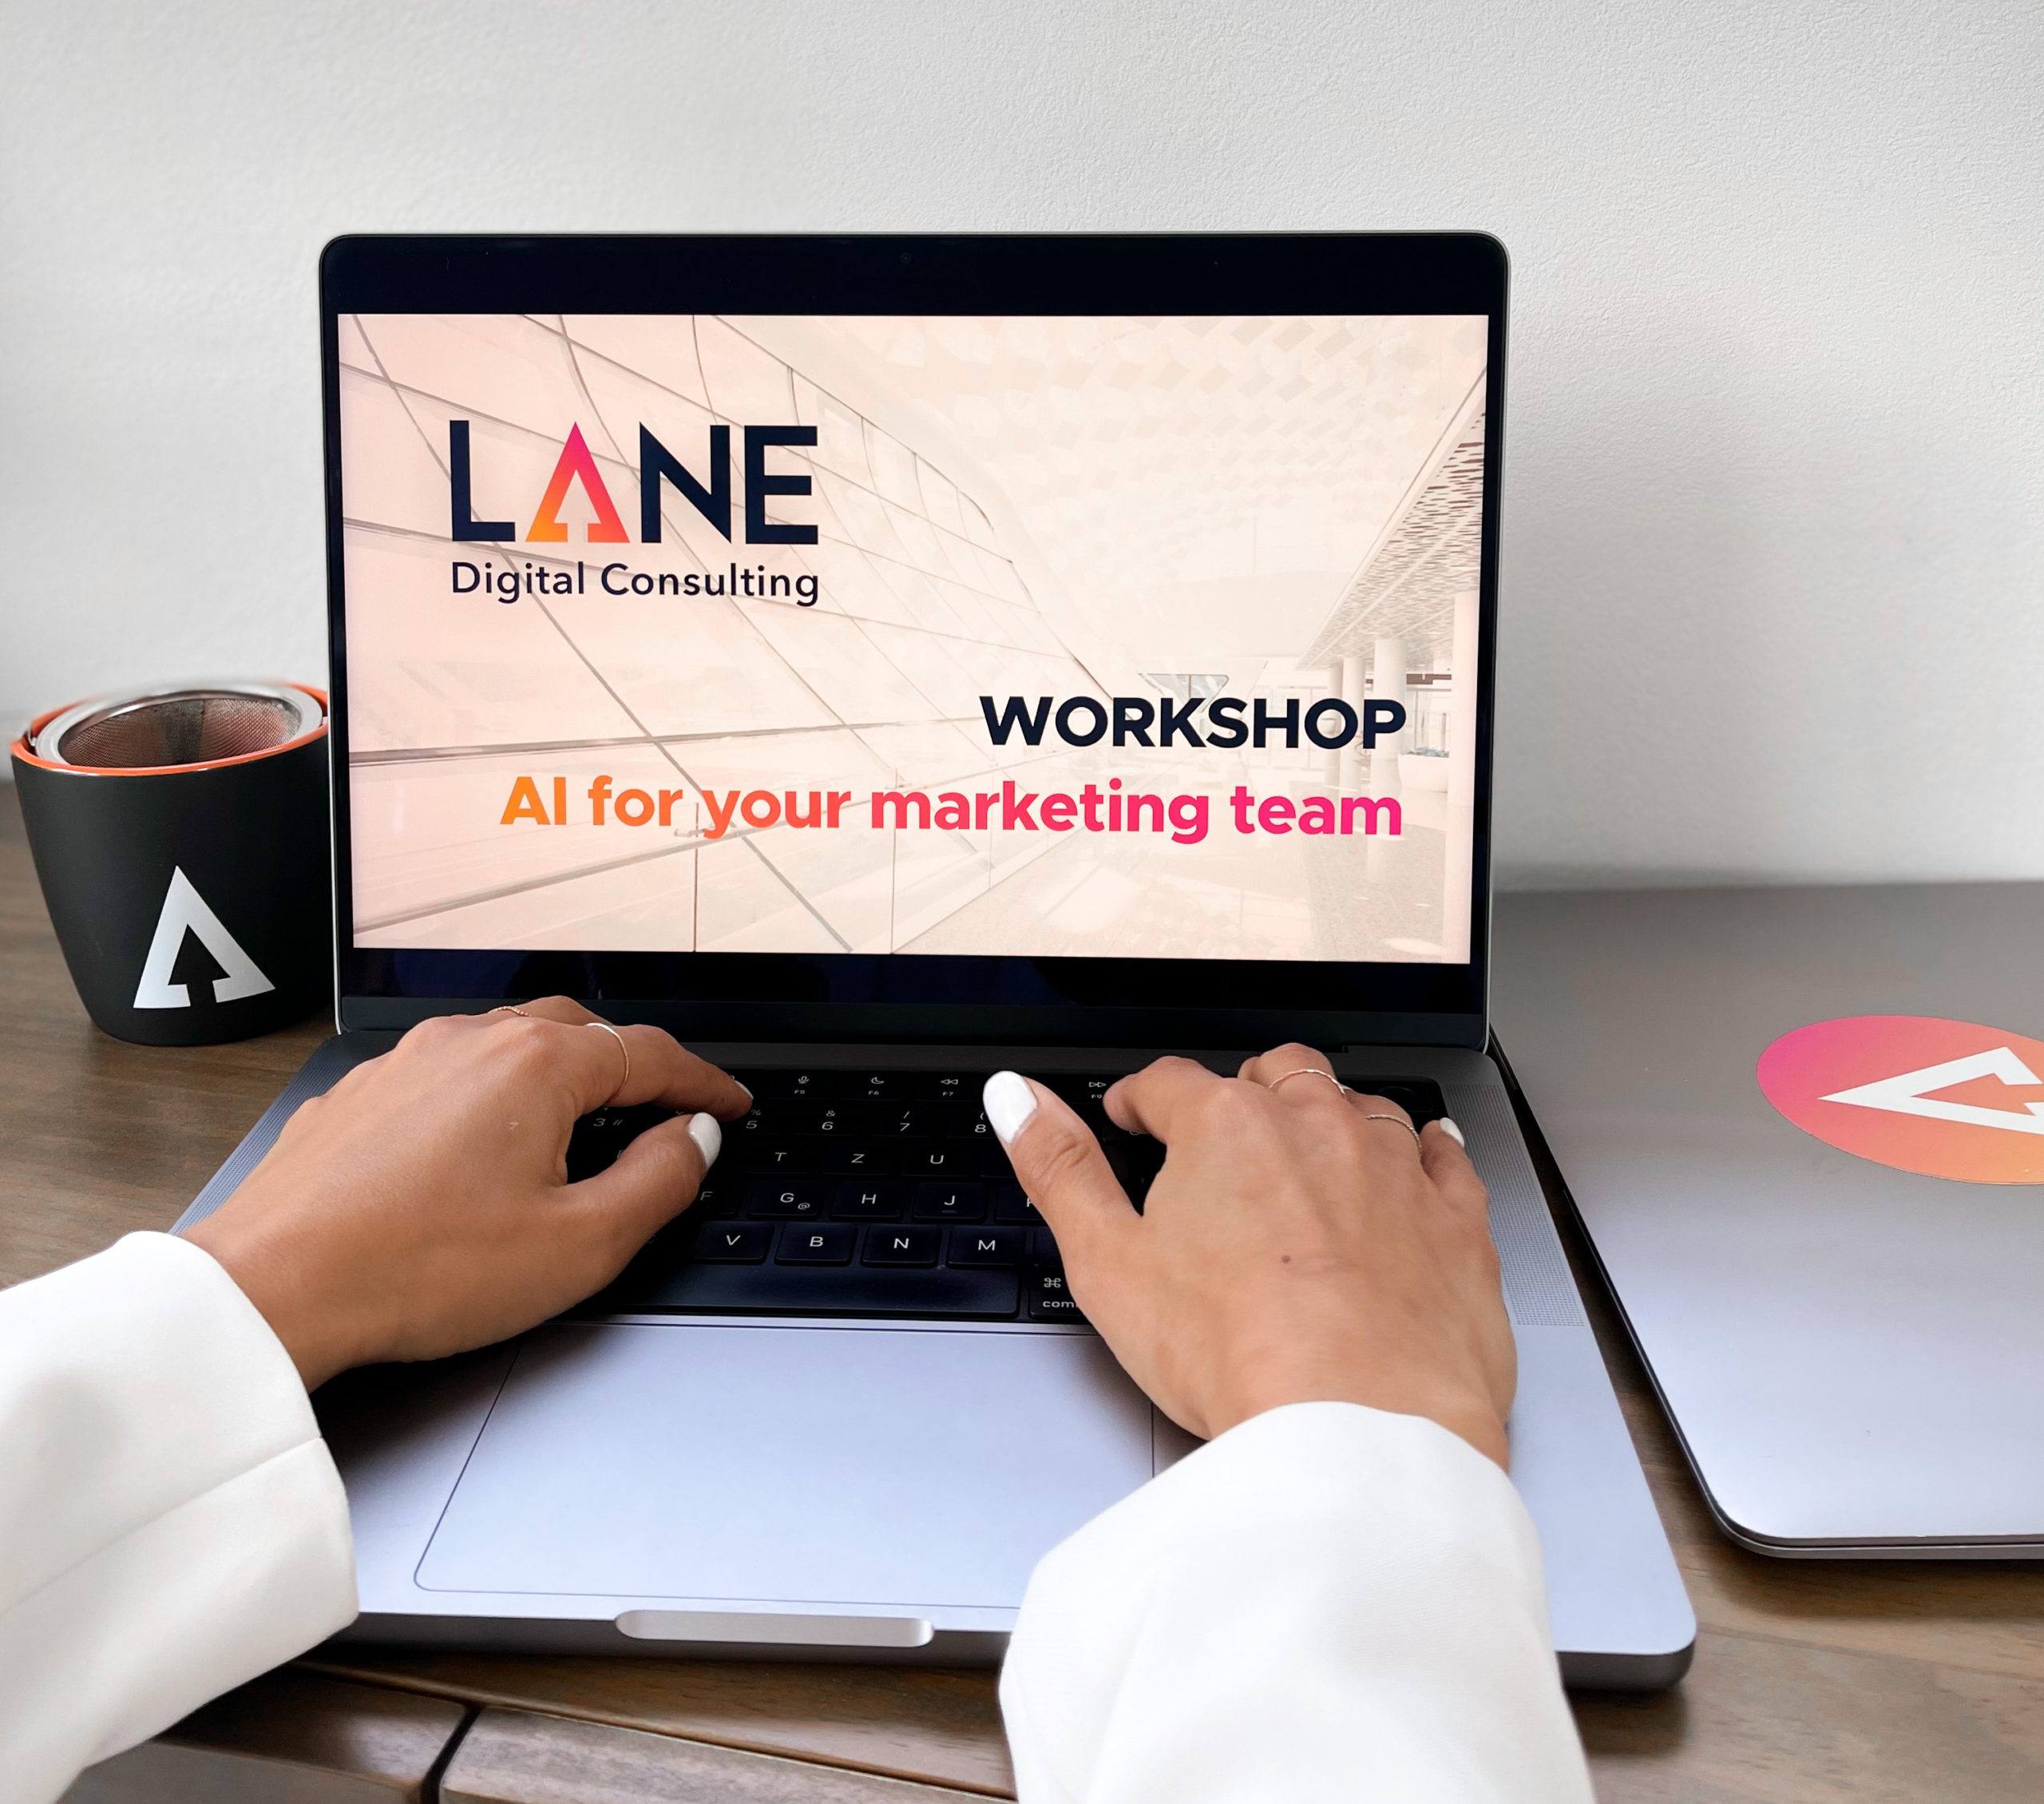 Diapositive du Woskhop Marketing AI de LANE Digital